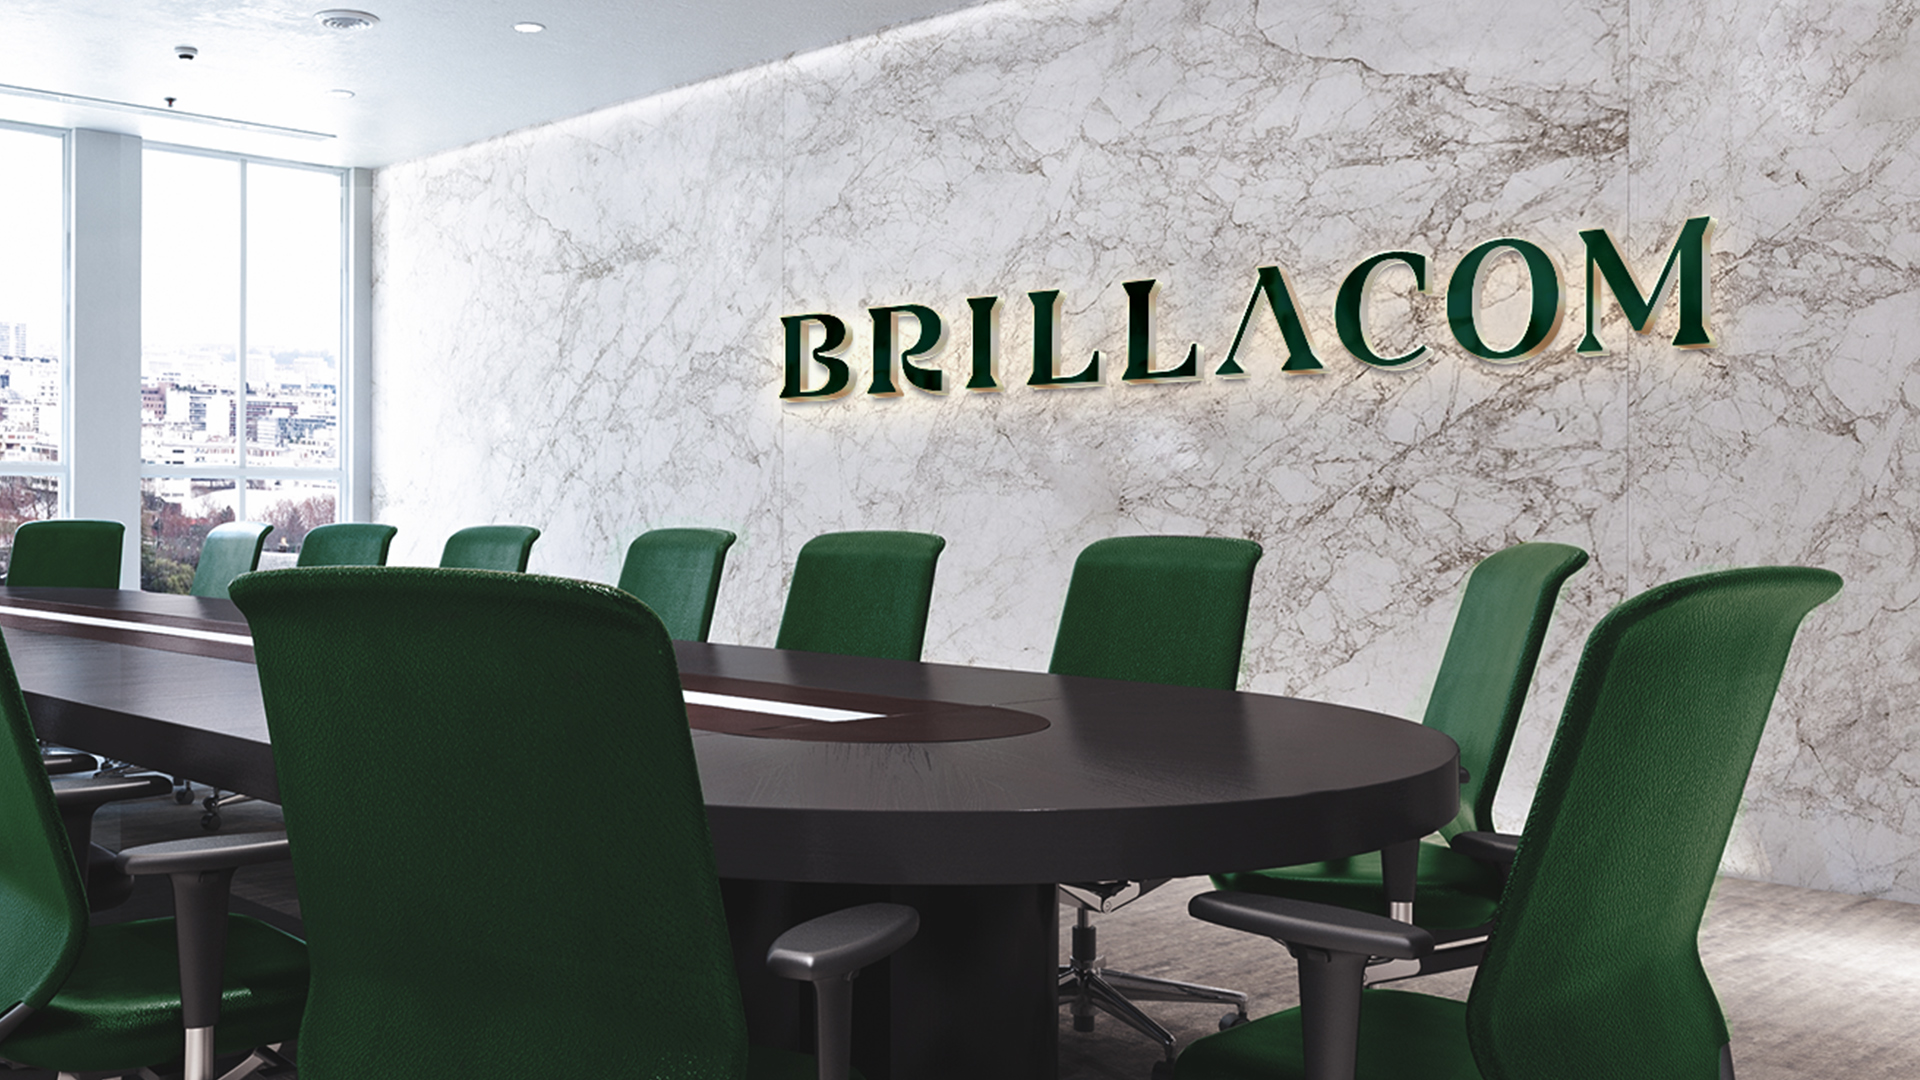 Brand Design for Brillacom Created by Estúdio Diro Design